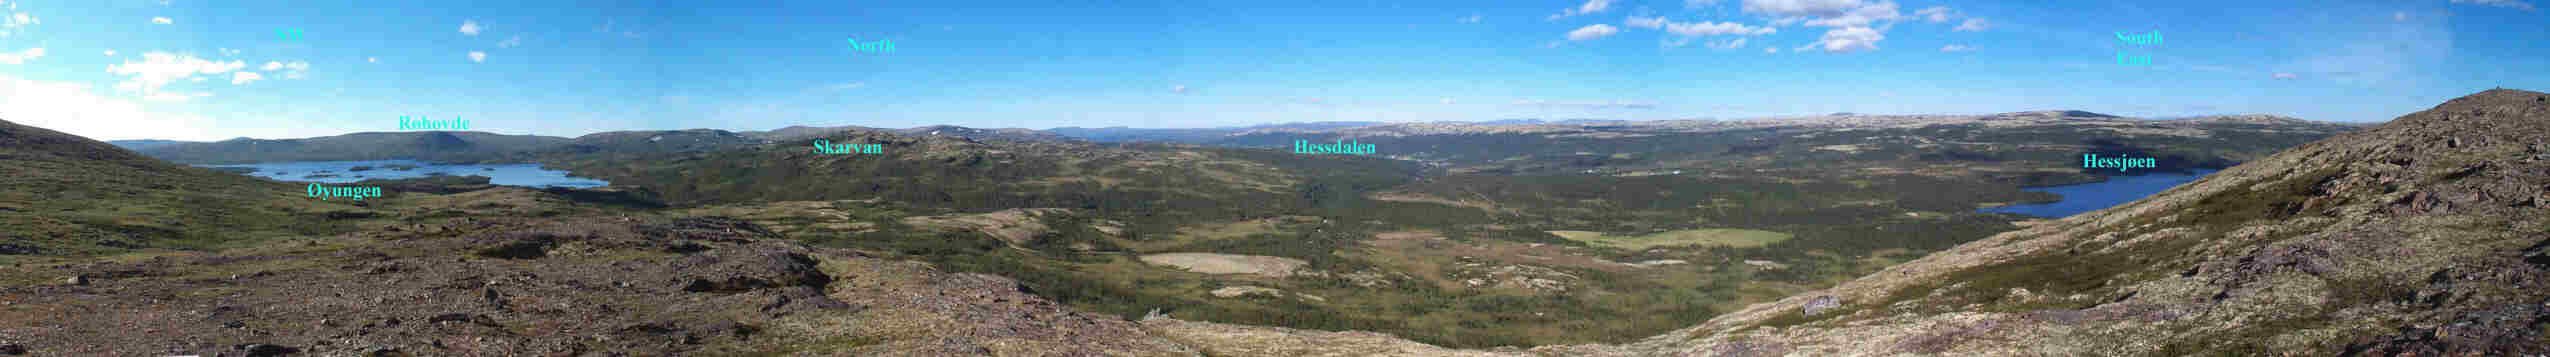 Hessdalen syd, utsikt mot nord